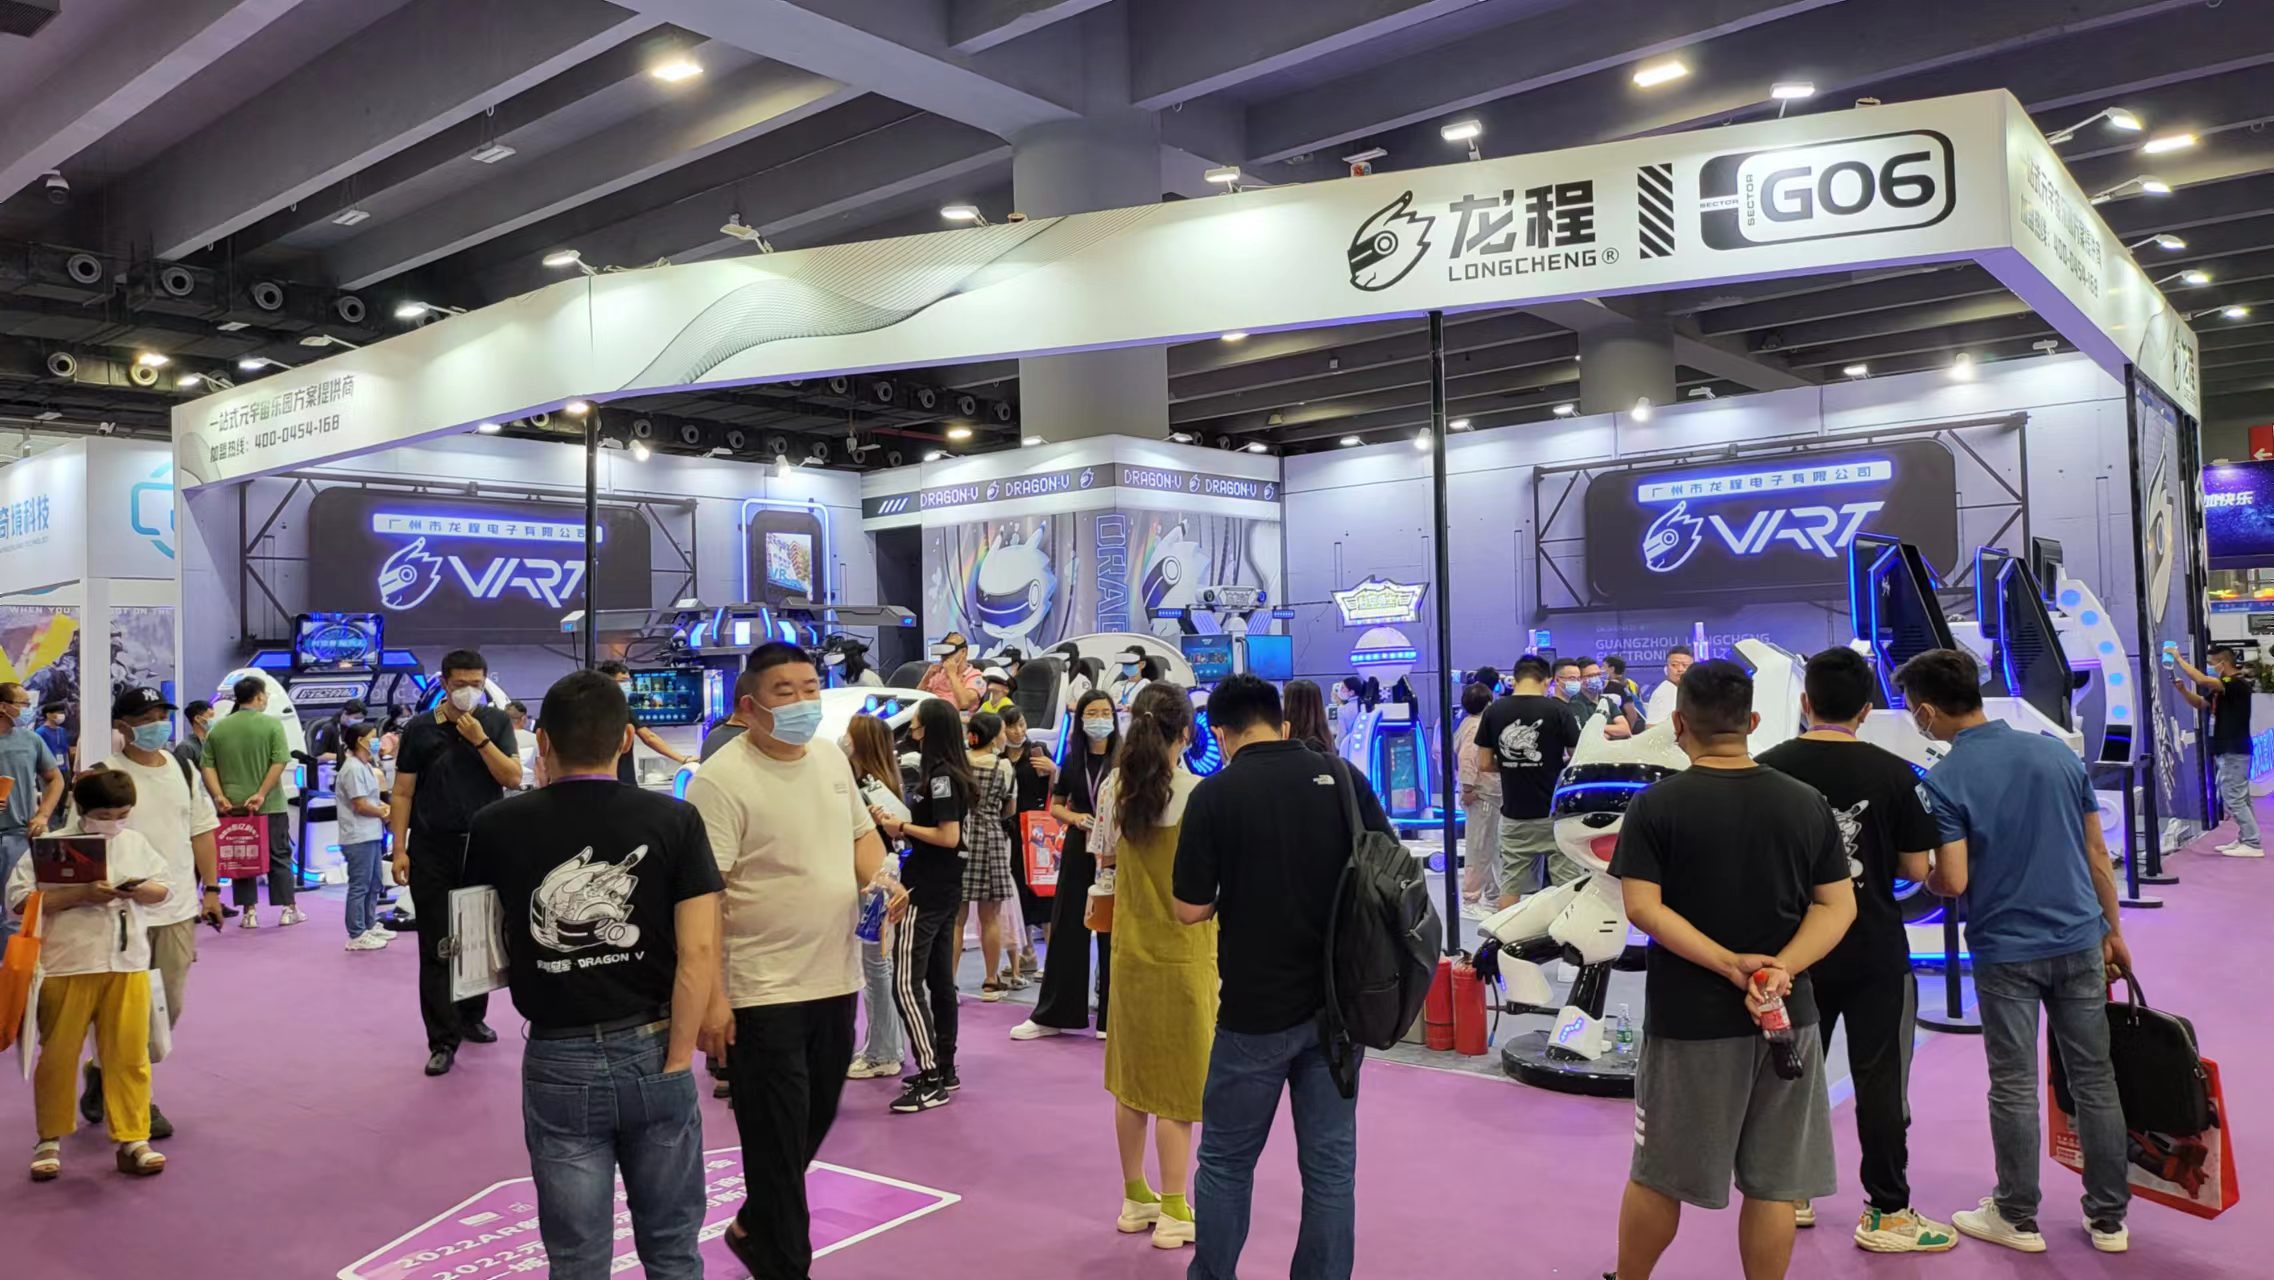 VART VR |A Guangzhou Metaverse G06 kiállítási stand igazán népszerű